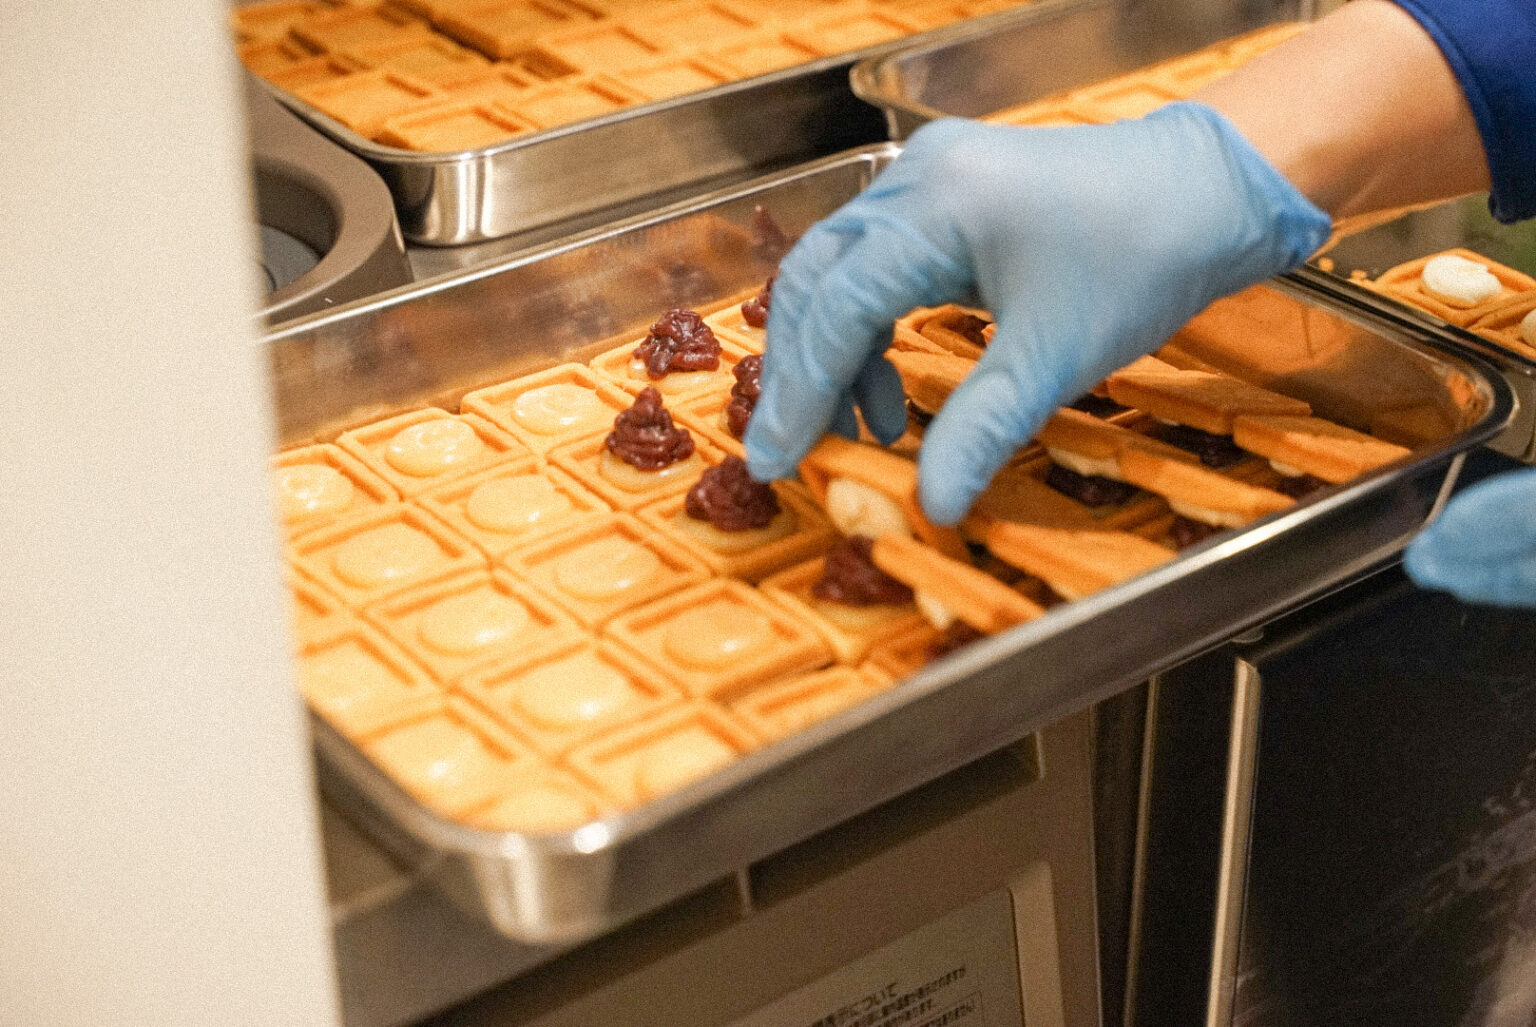 挟んだときに柔らかいバタークリームがはみ出さないように、クッキーをボックス型に。表面に入った柄は力学的に割れやすく食べやすいように設計されてるのだとか。